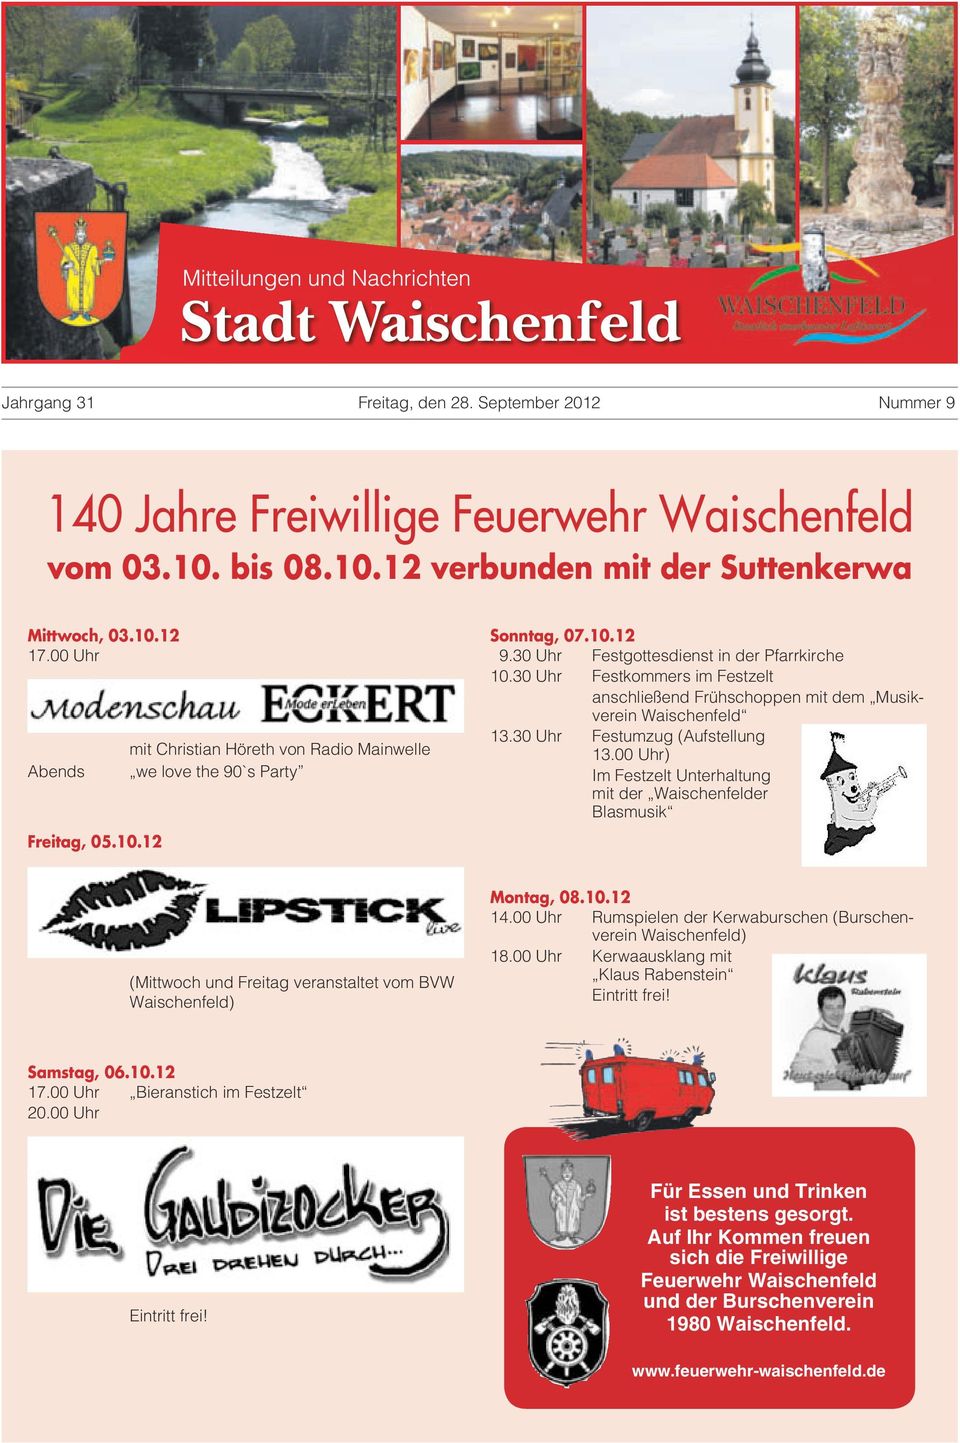 30 Uhr Festkommers im Festzelt anschließend Frühschoppen mit dem Musikverein Waischenfeld 13.30 Uhr Festumzug (Aufstellung 13.